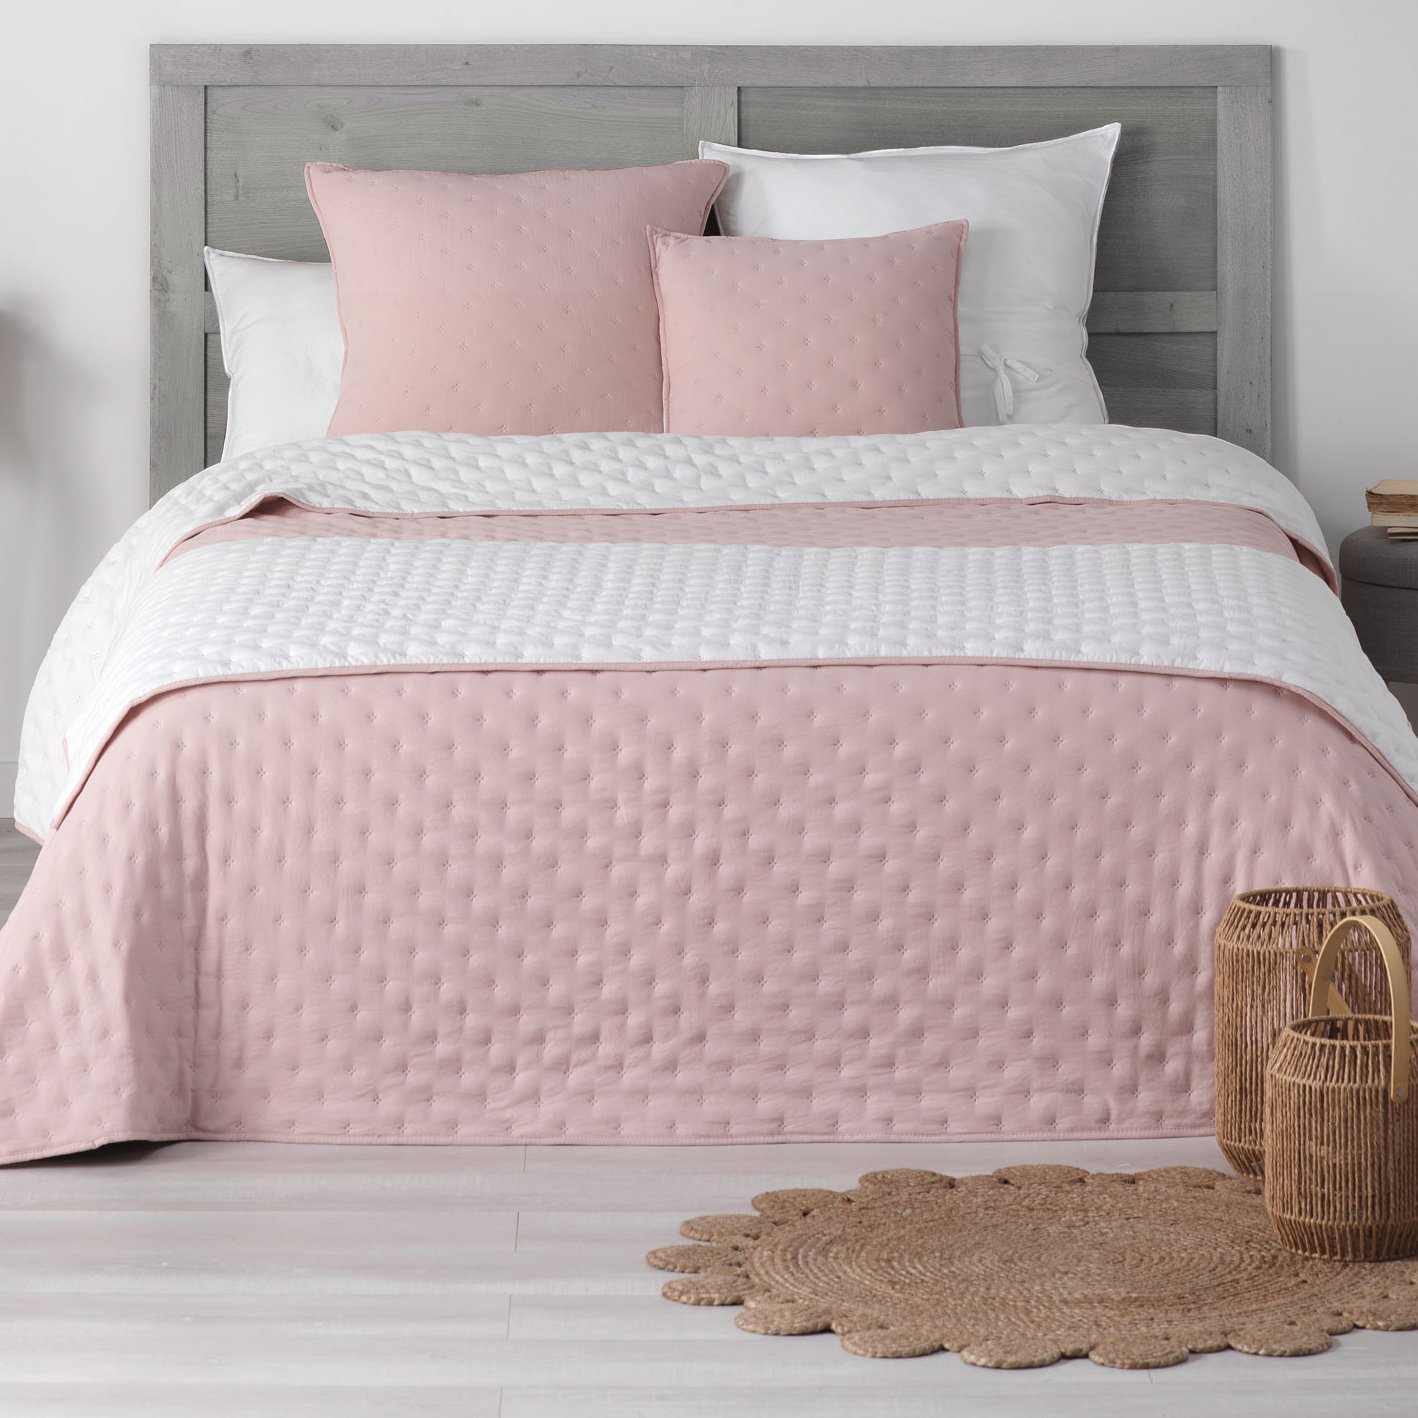 Camino de cama rosa para pie de cama, decoración de terciopelo